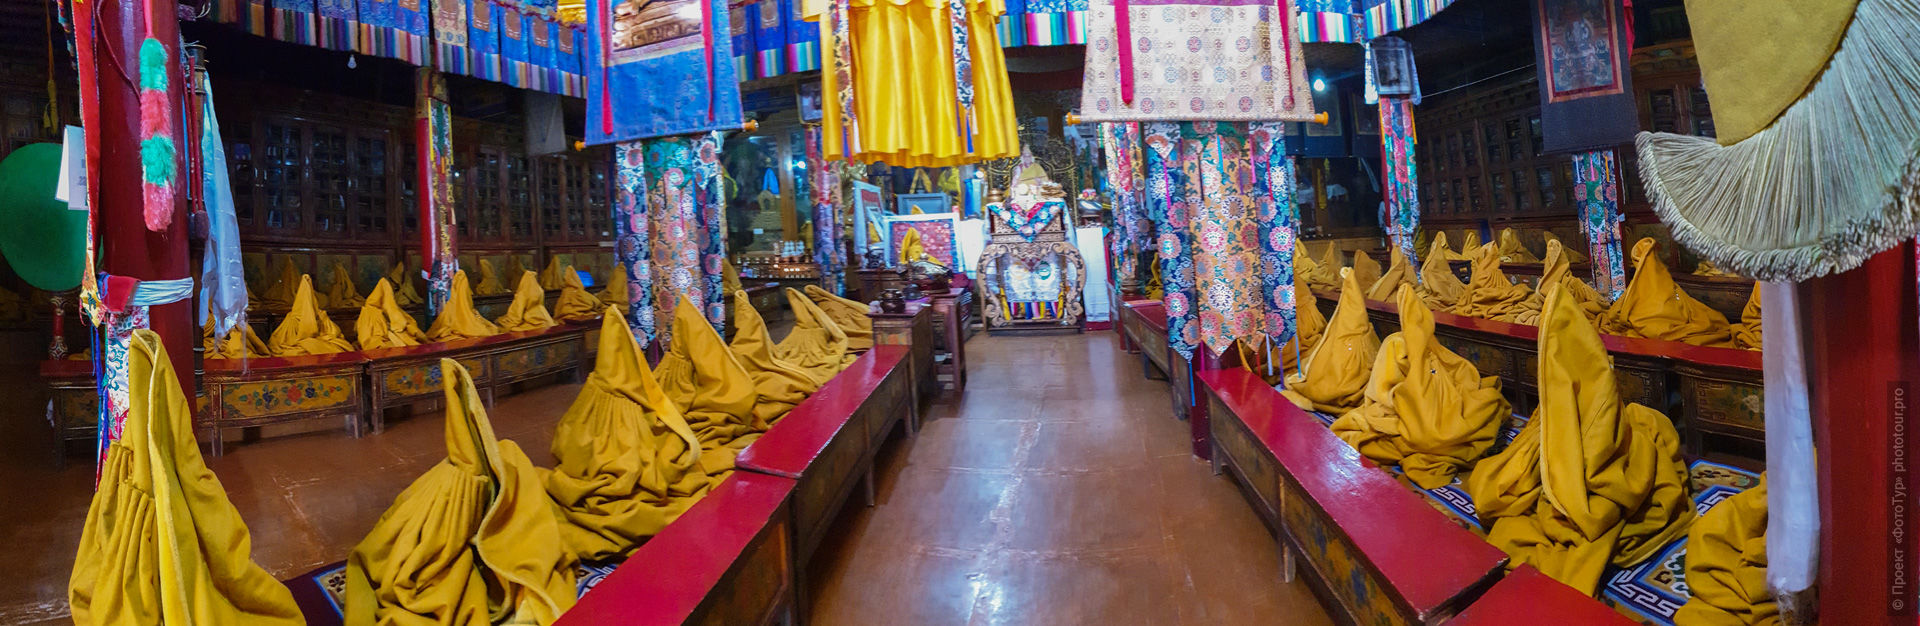 Главный зал древнего друкханга буддийского монастыря Ликир Гонпа, Ладакх.